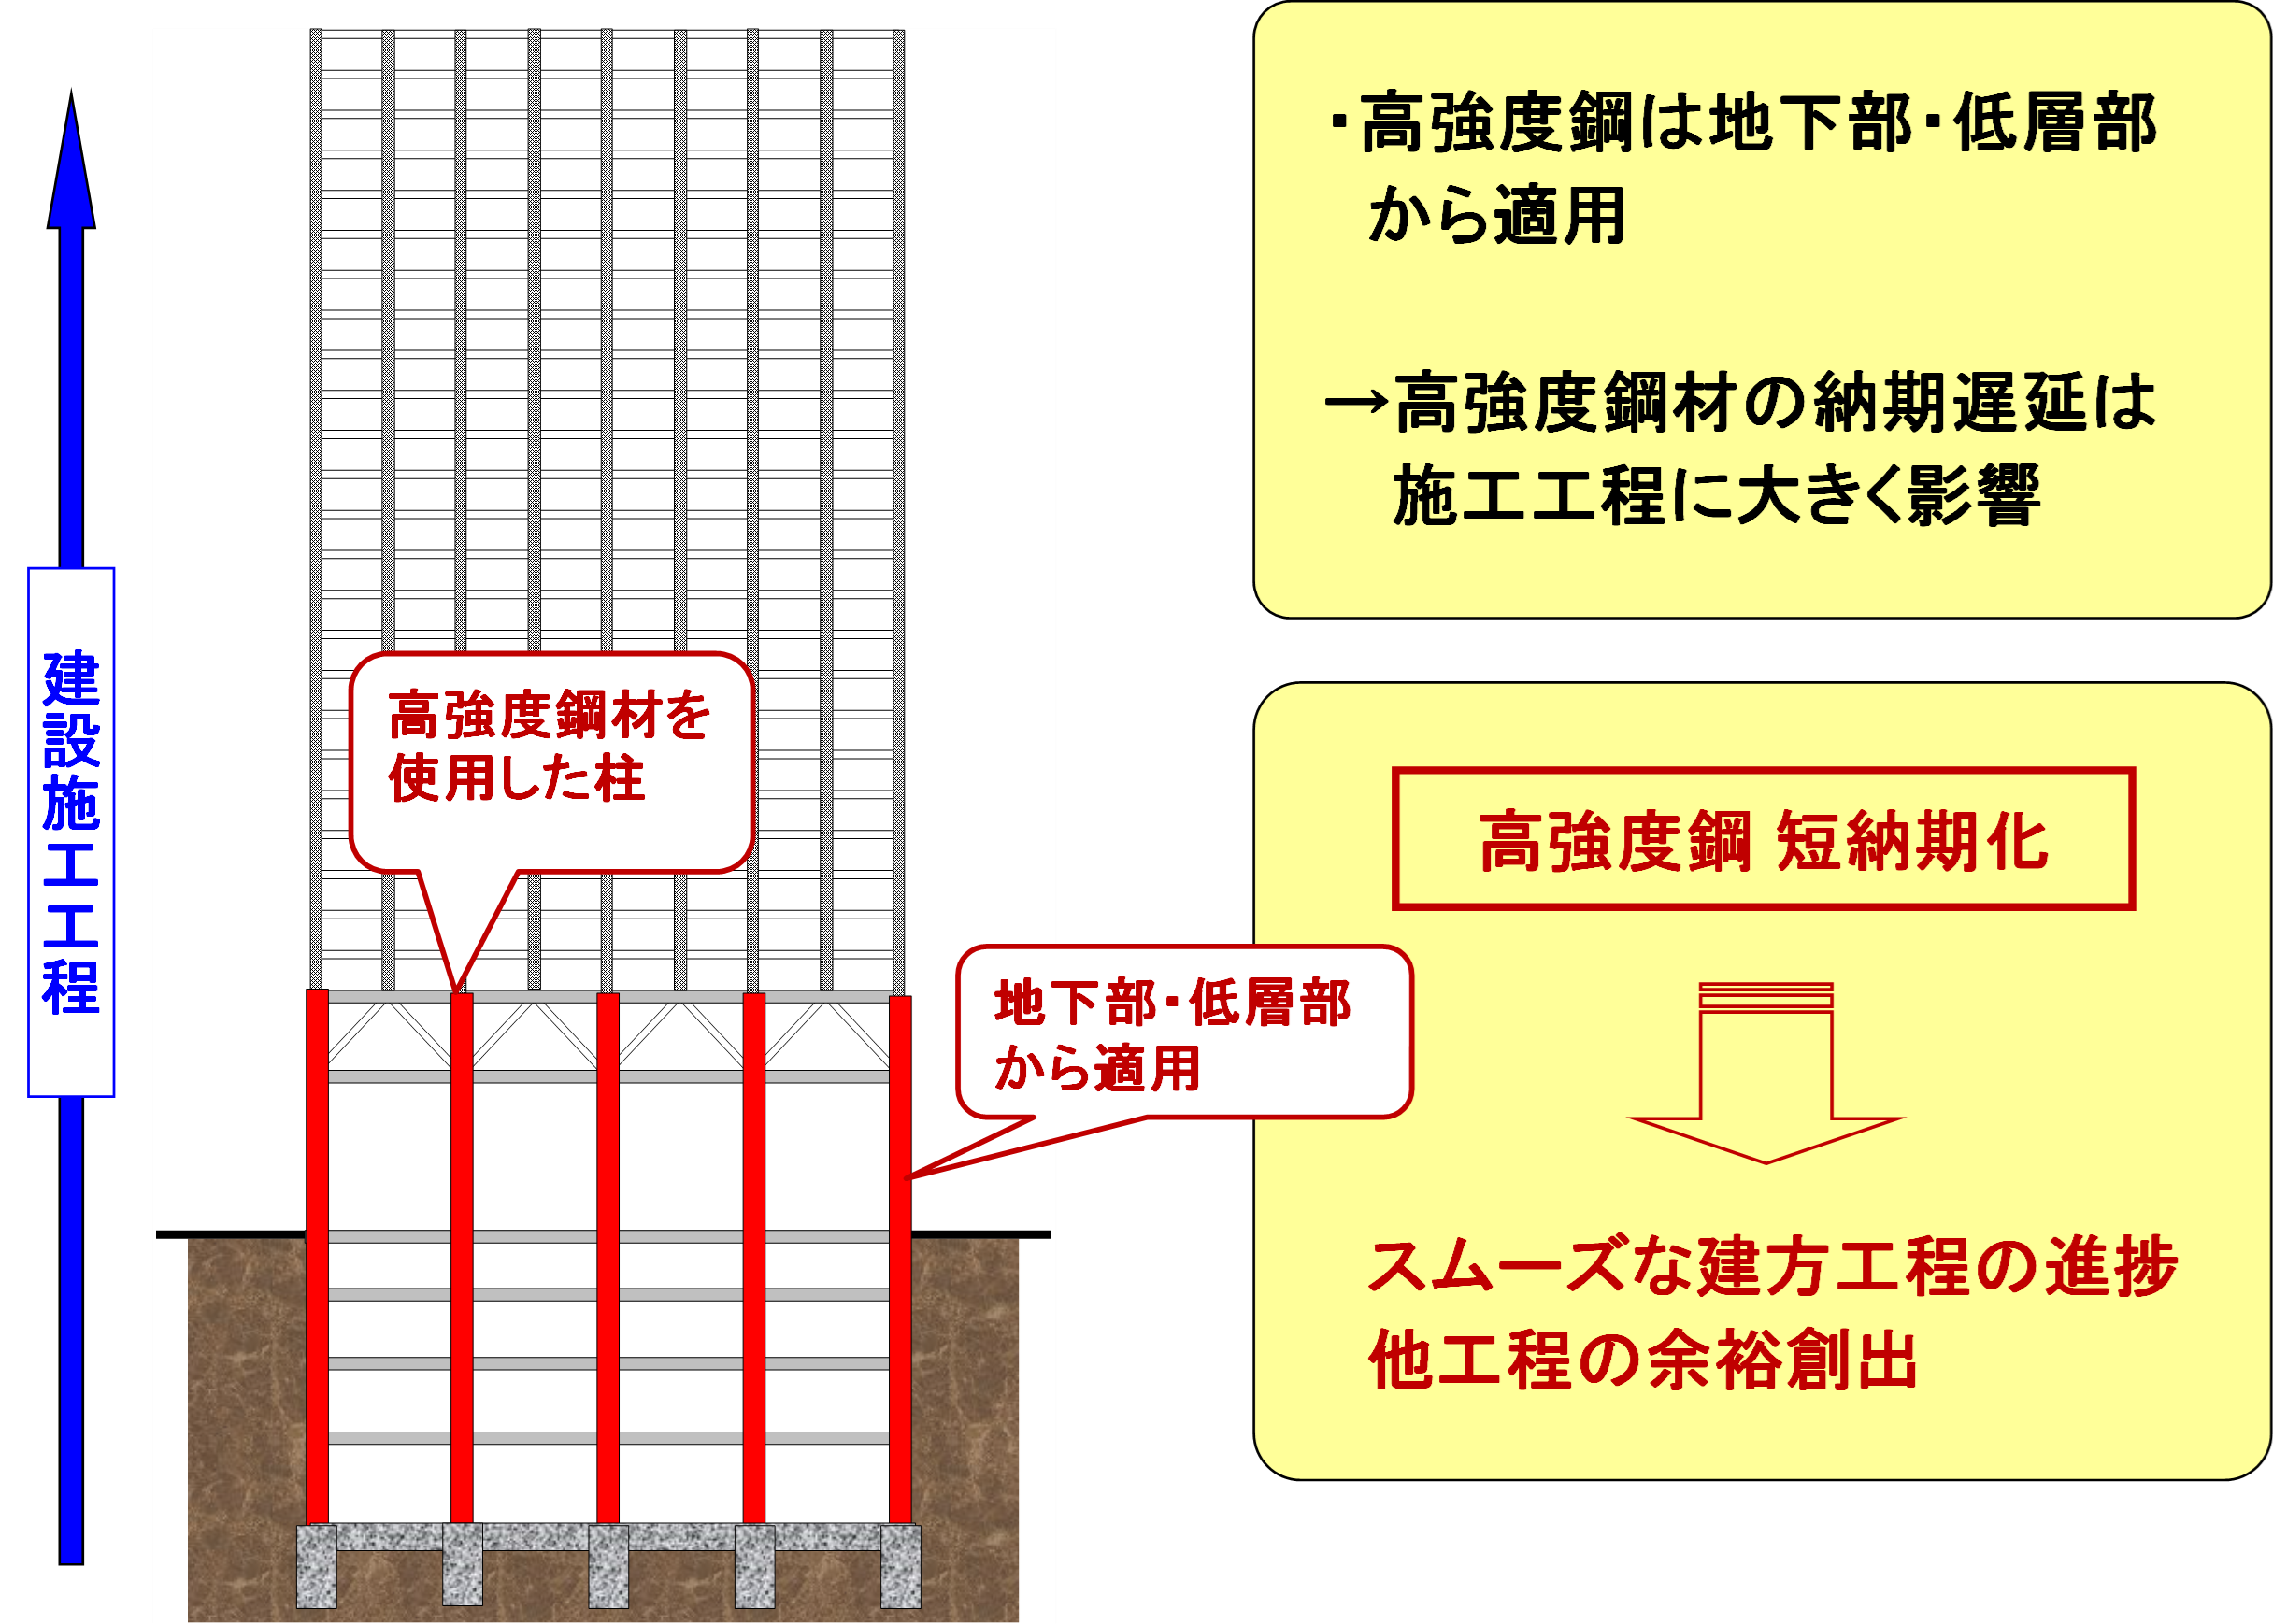 【図3】建築構造用高性能590N/mm2級鋼材を活用した超高層建築物の建設工程